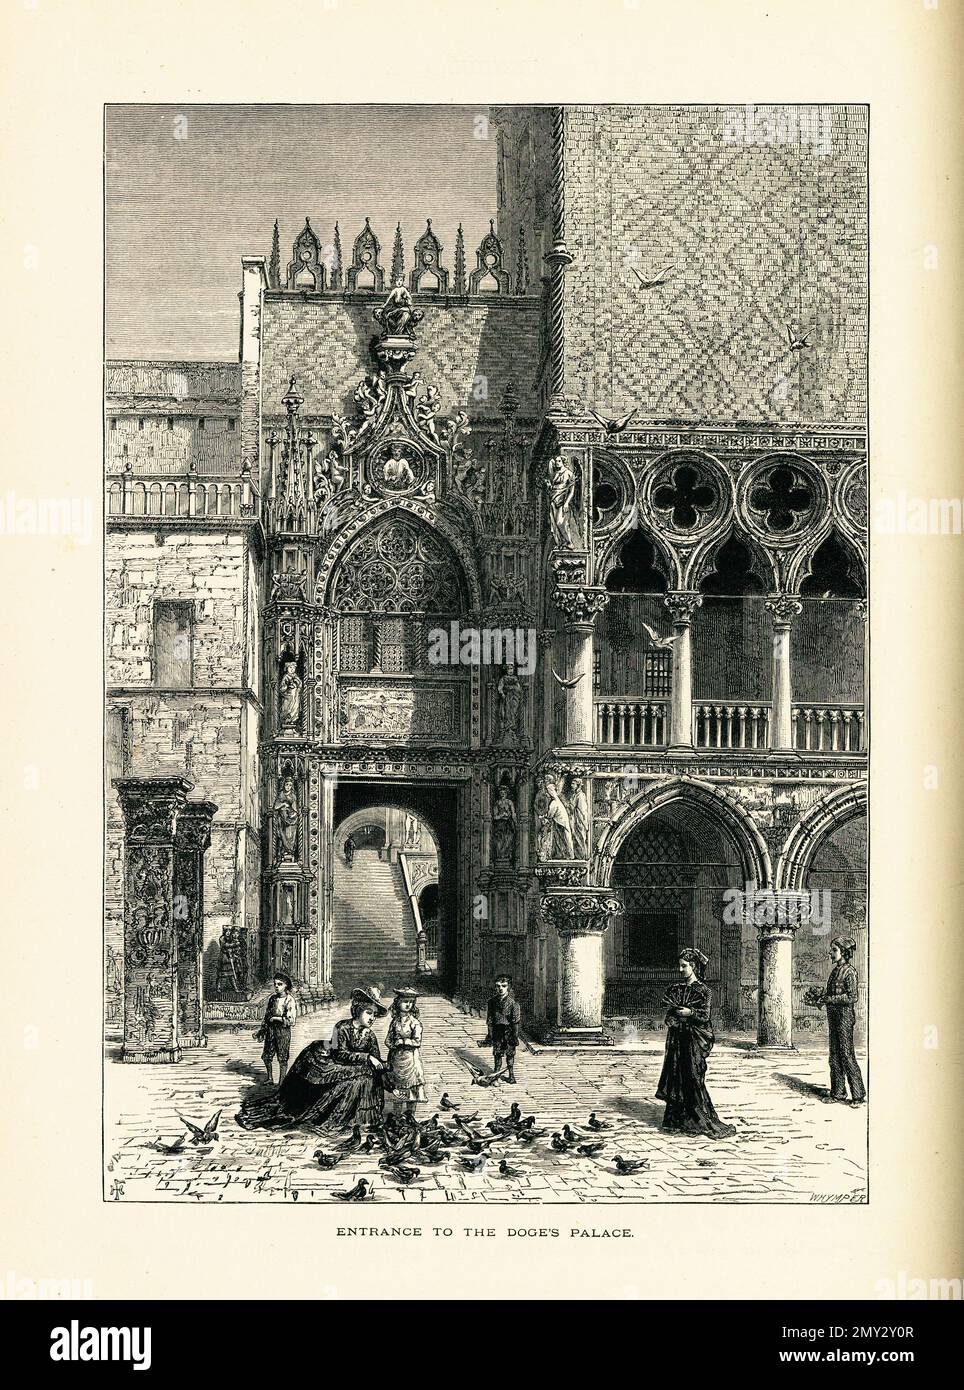 Antica illustrazione dell'ingresso al Palazzo Ducale, una delle principali attrazioni di Venezia. Illustrazione pubblicata in picturesque Europe, Vol. Foto Stock